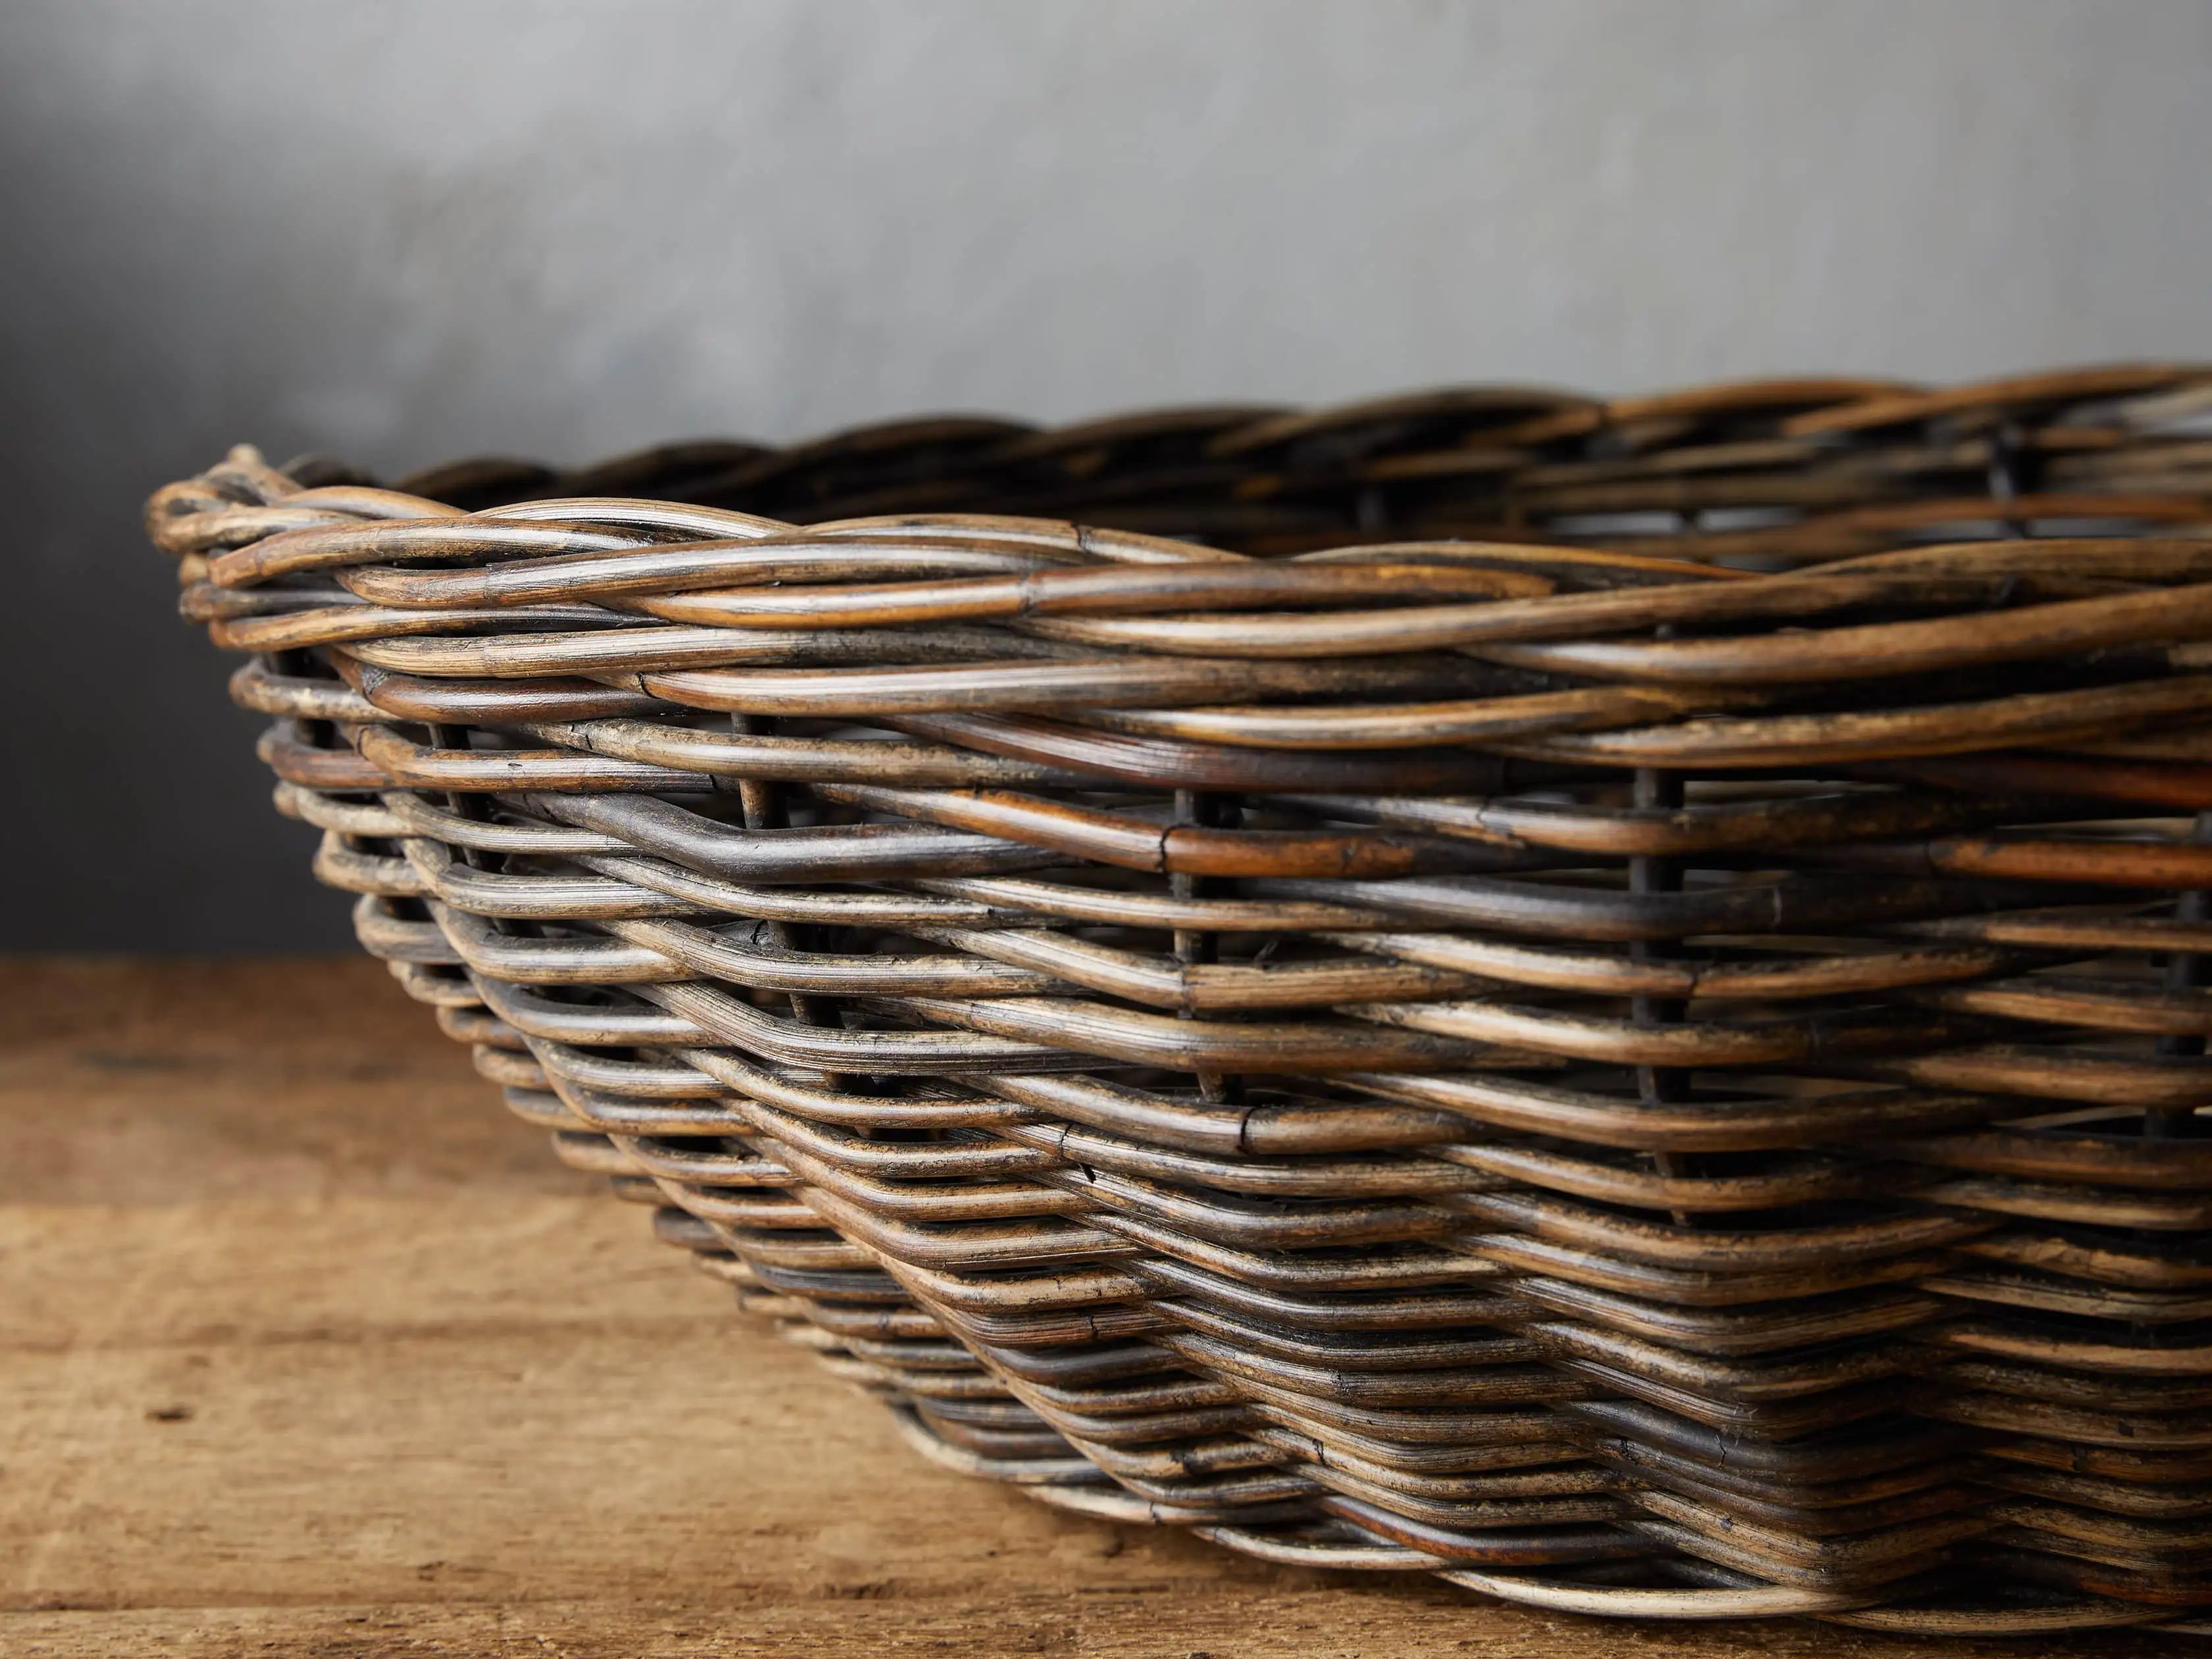 Vintage Shallow Basket | Arhaus